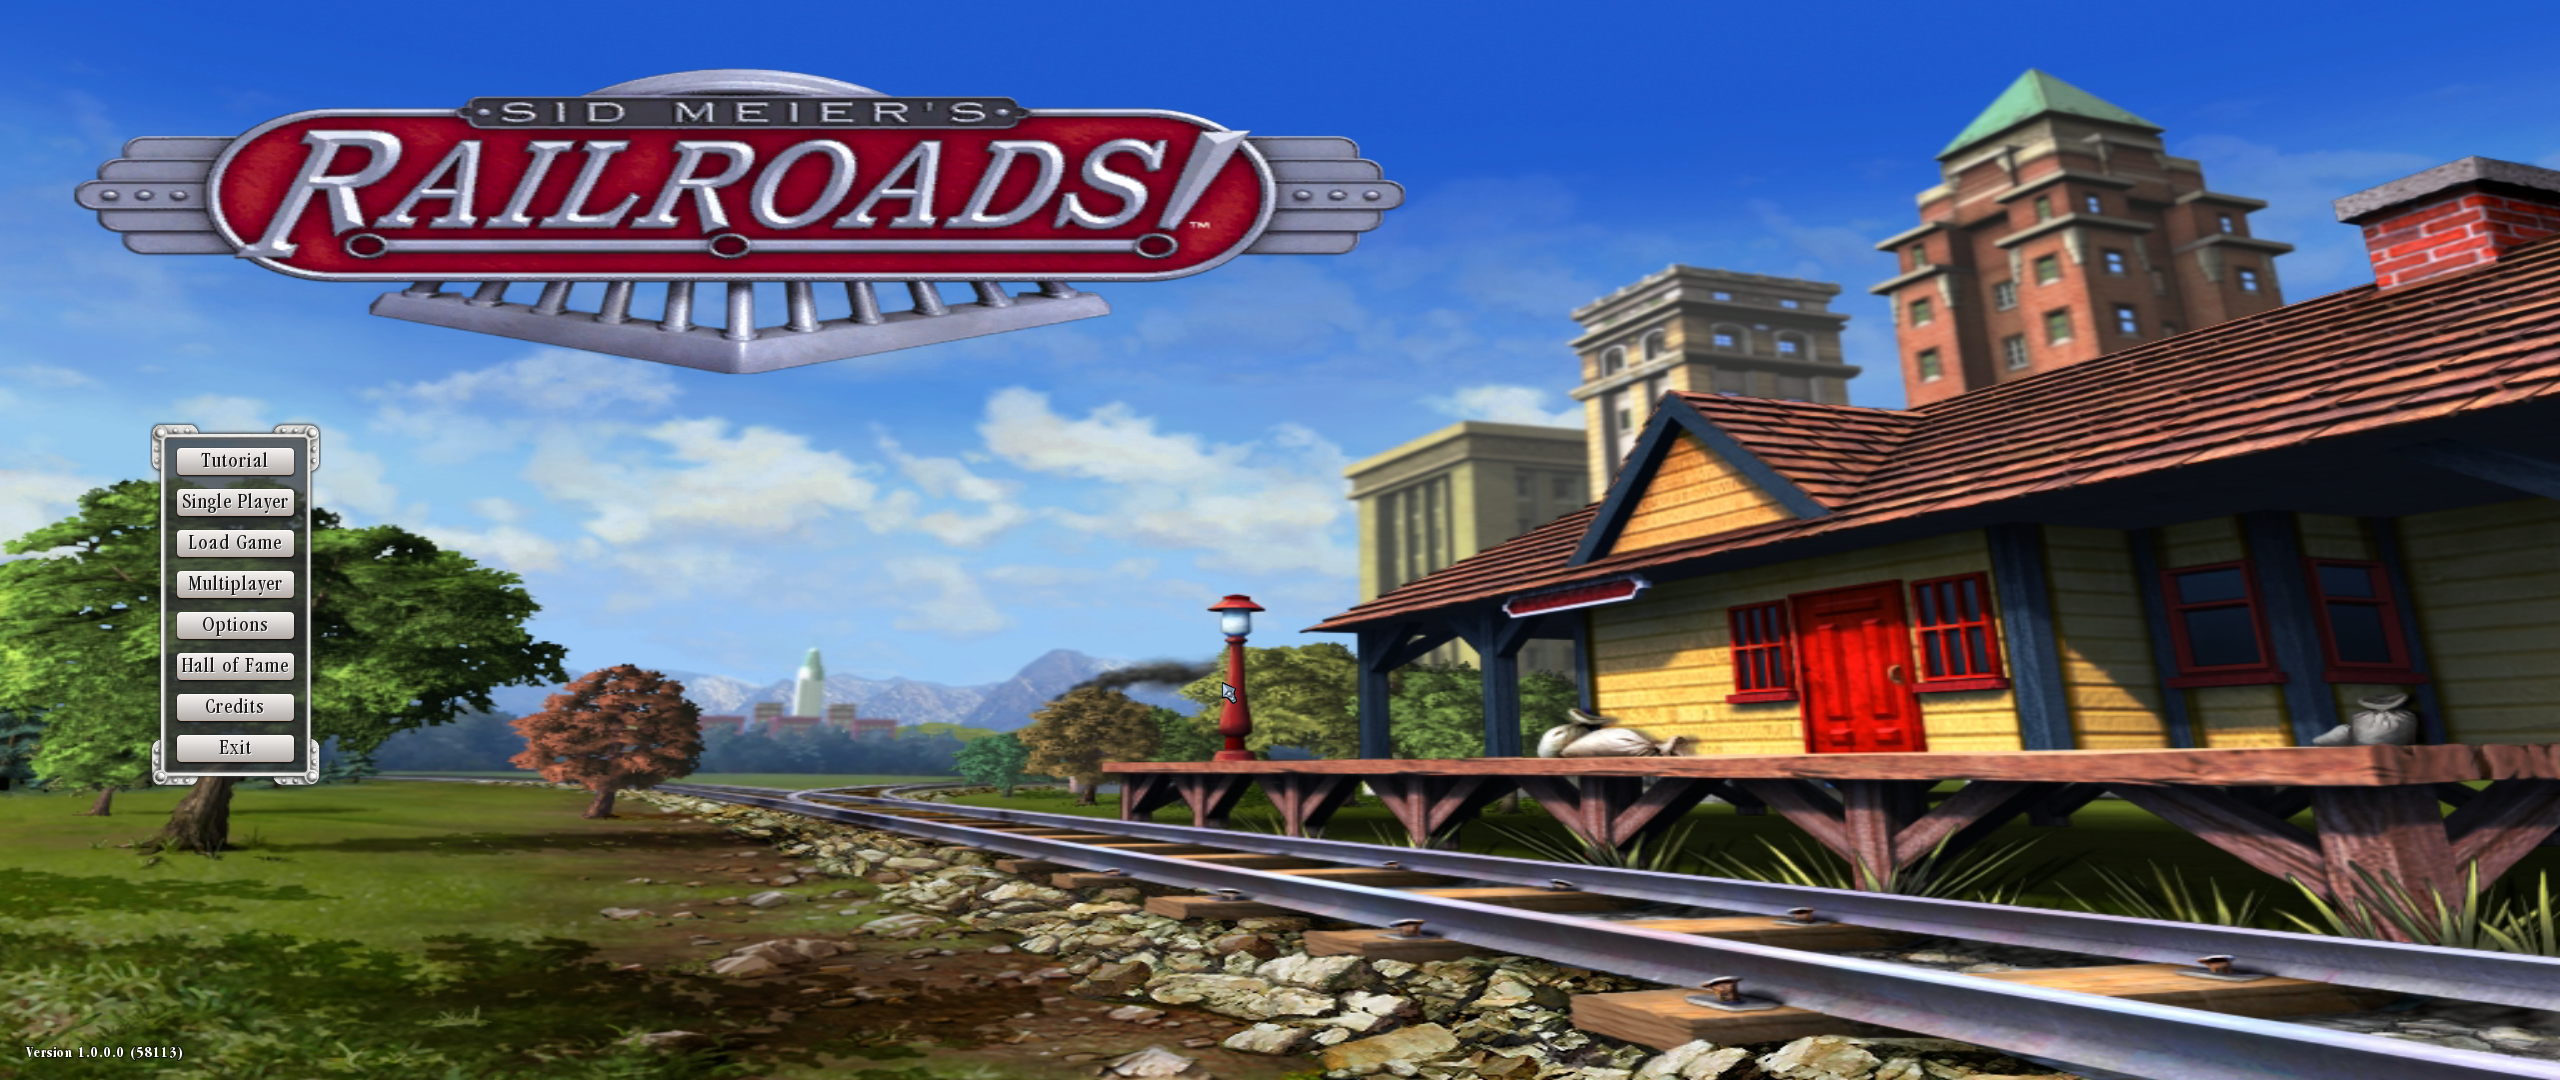 2019-02-13 17_47_59-Sid Meier's Railroads!.png